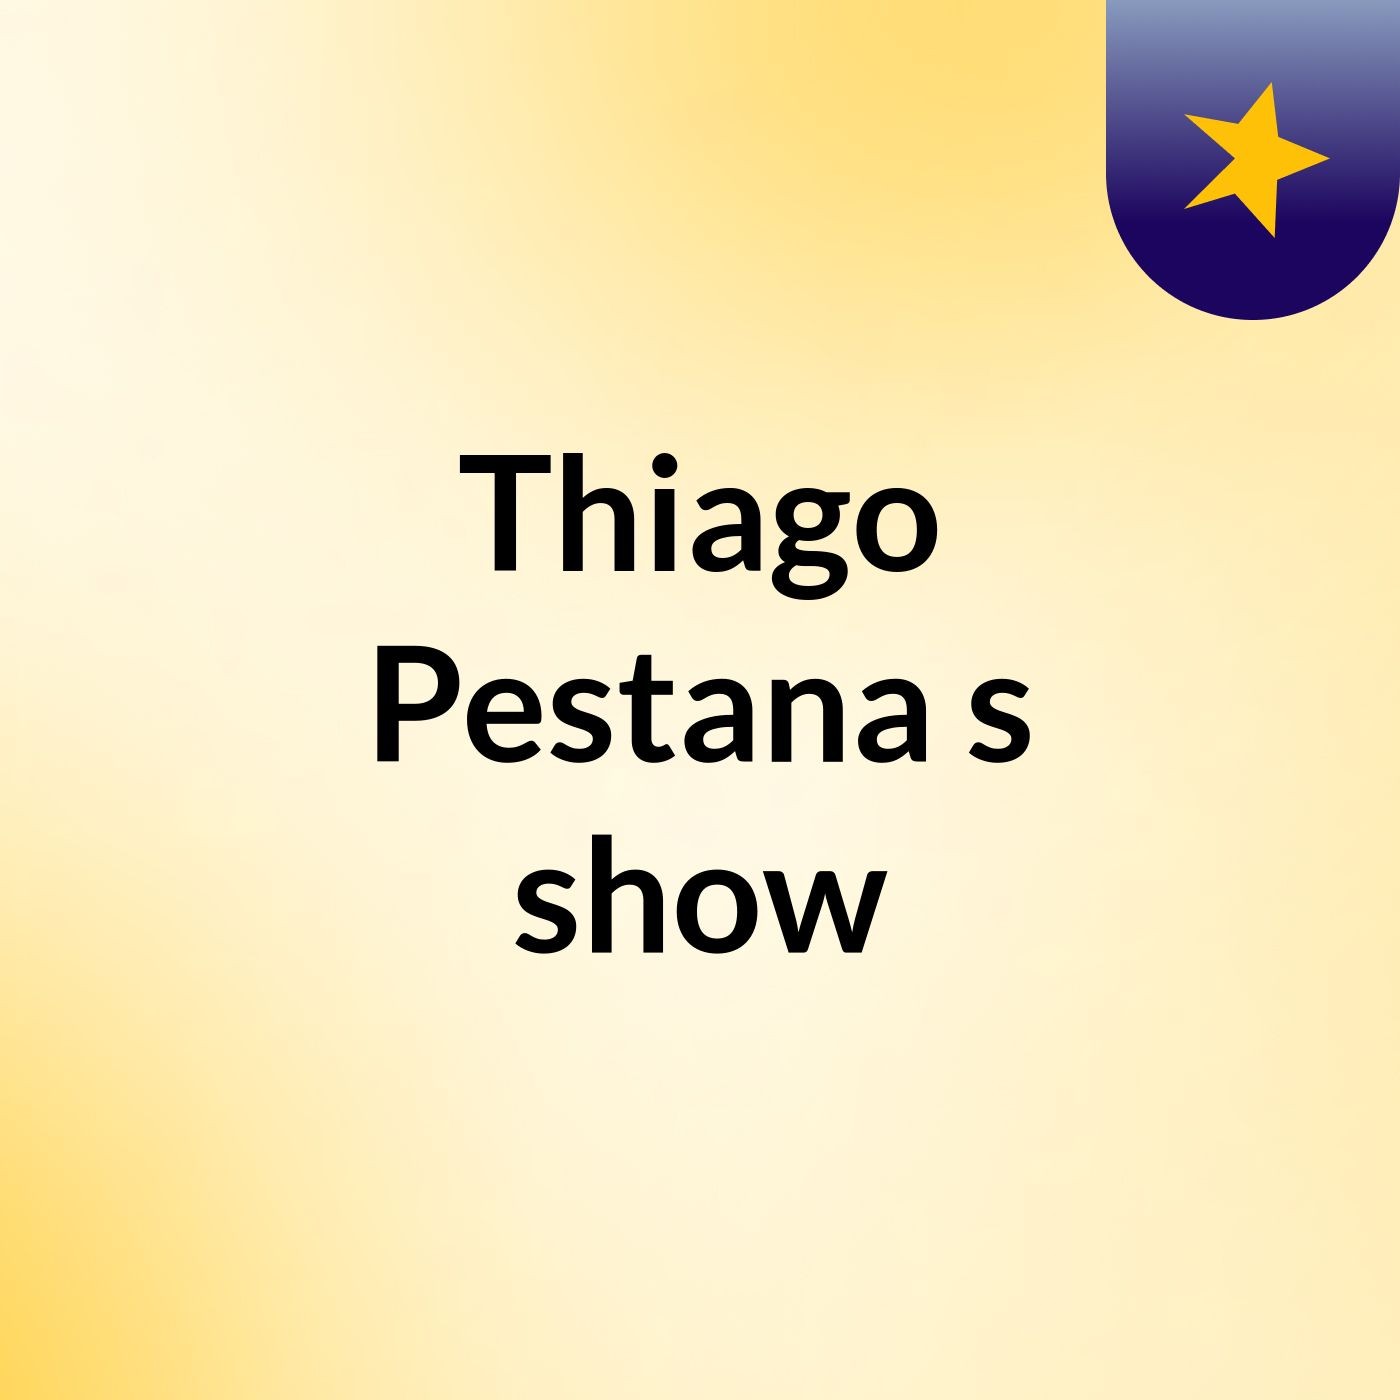 Thiago Pestana's show